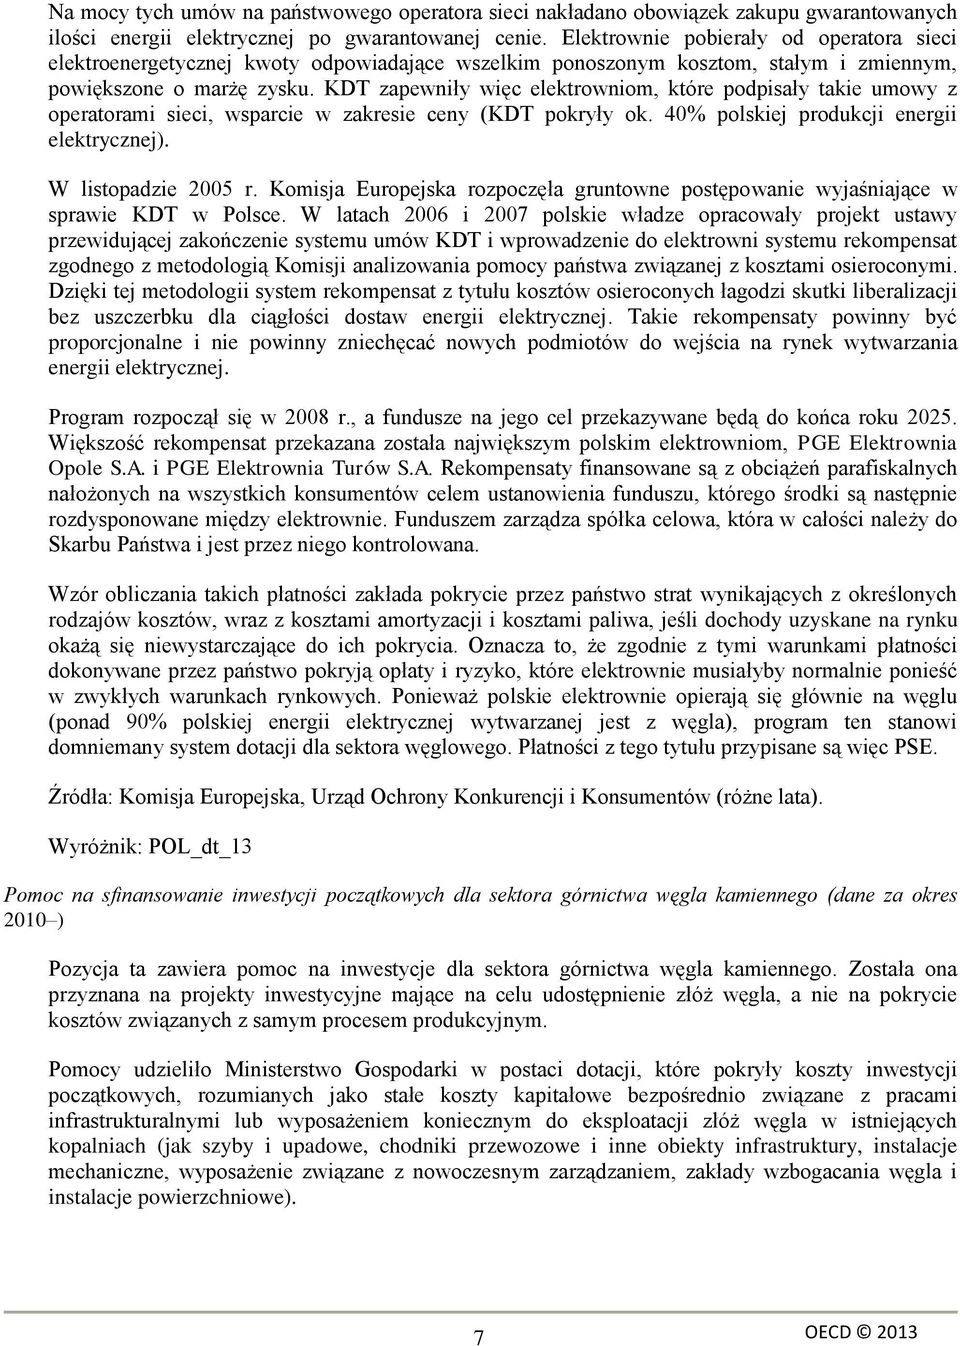 KDT zapewniły więc elektrowniom, które podpisały takie umowy z operatorami sieci, wsparcie w zakresie ceny (KDT pokryły ok. 40% polskiej produkcji energii elektrycznej). W listopadzie 2005 r.